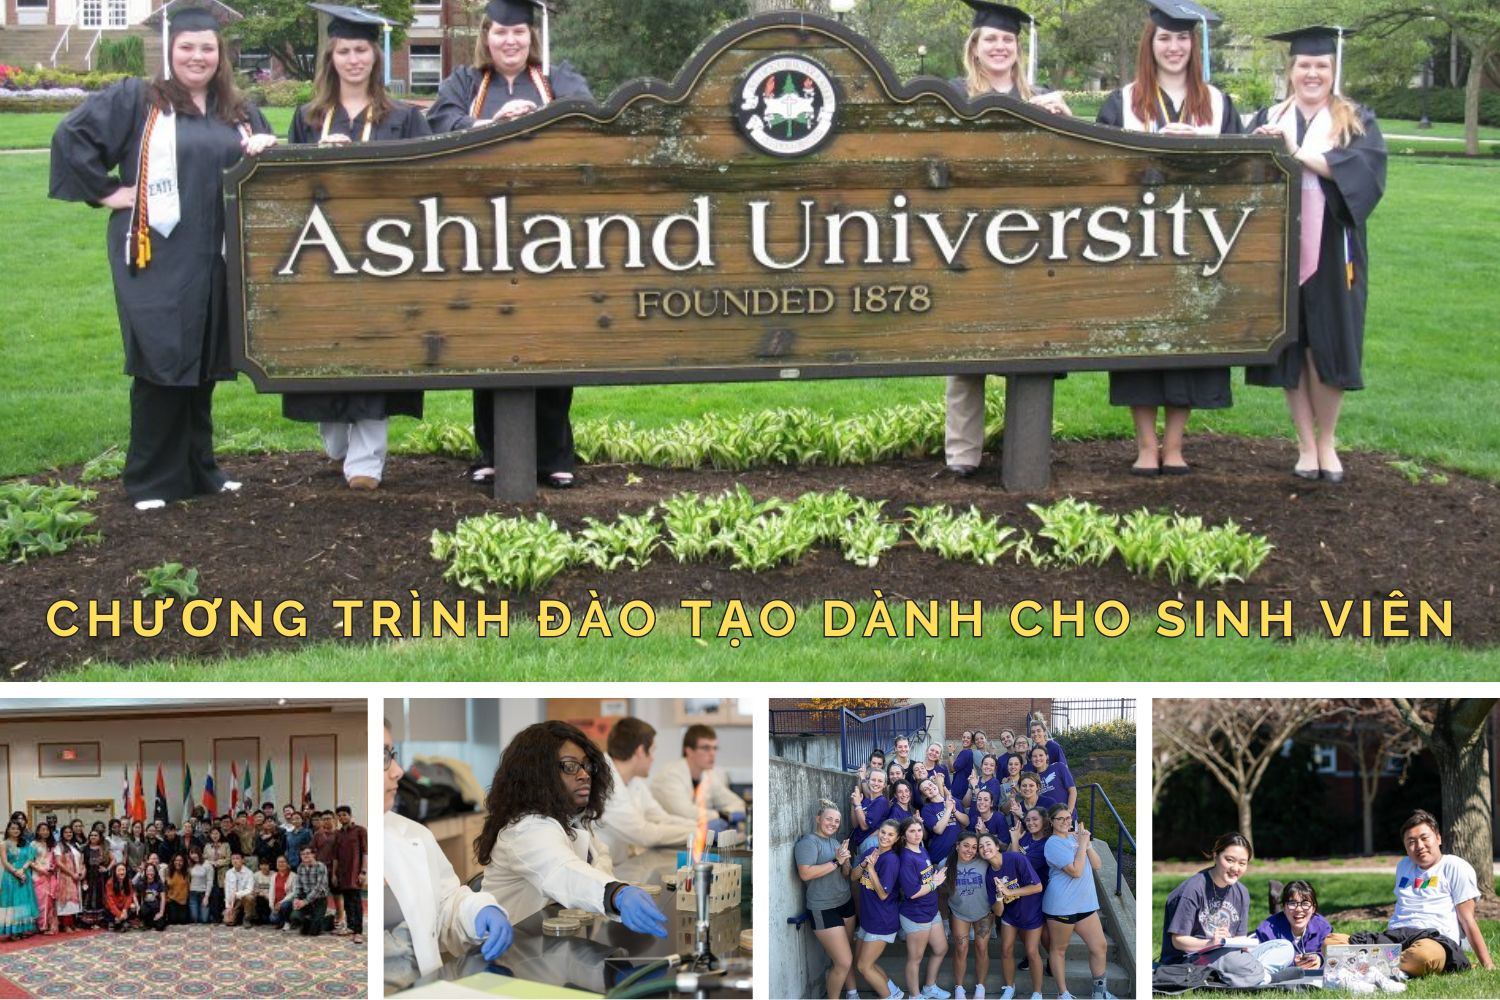 Chương trình đào tạo dành cho sinh viên Ashland University